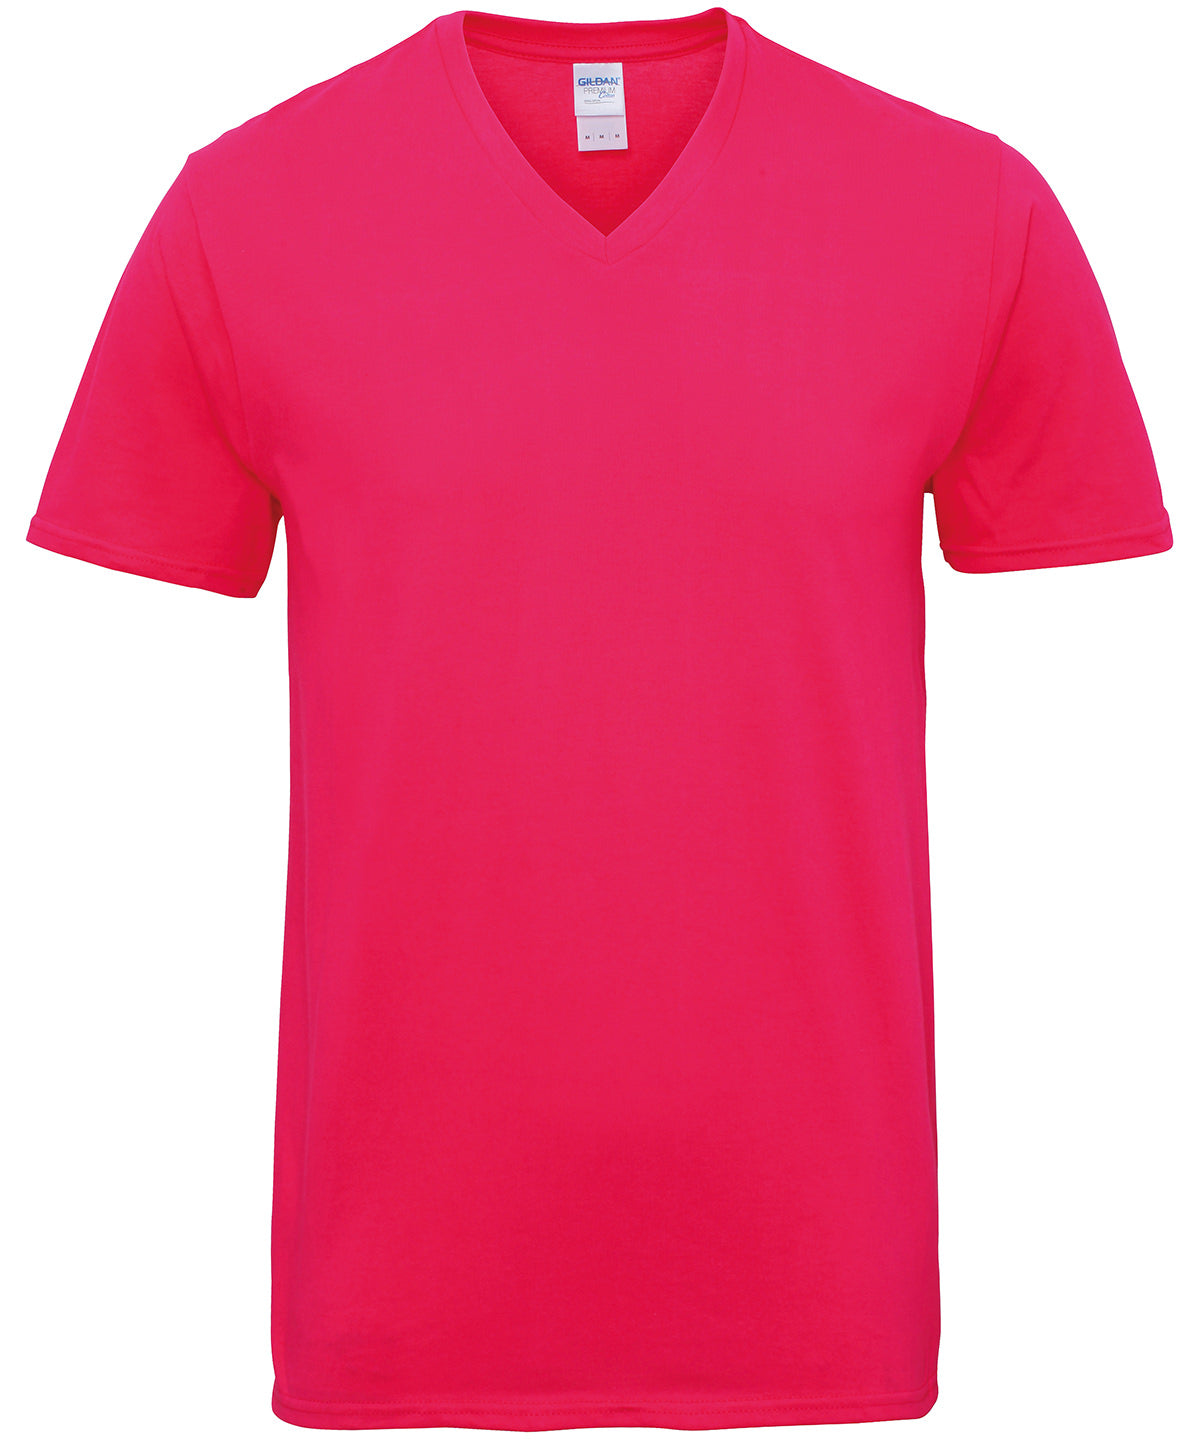 Stuttermabolir - Premium Cotton® Adult V-neck T-shirt